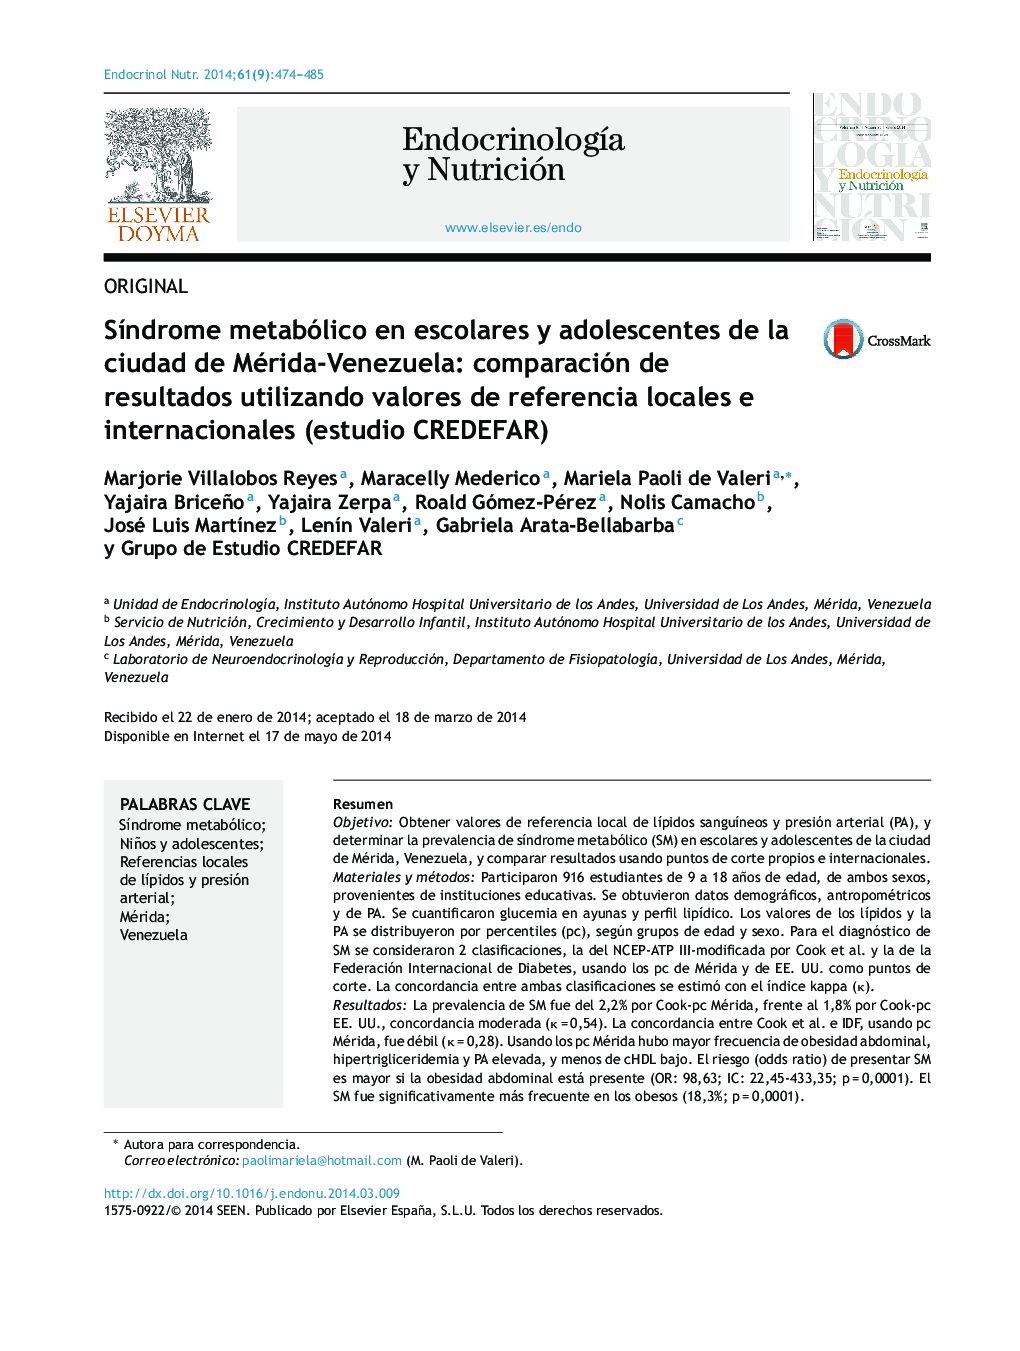 Síndrome metabólico en escolares y adolescentes de la ciudad de Mérida-Venezuela: comparación de resultados utilizando valores de referencia locales e internacionales (estudio CREDEFAR)